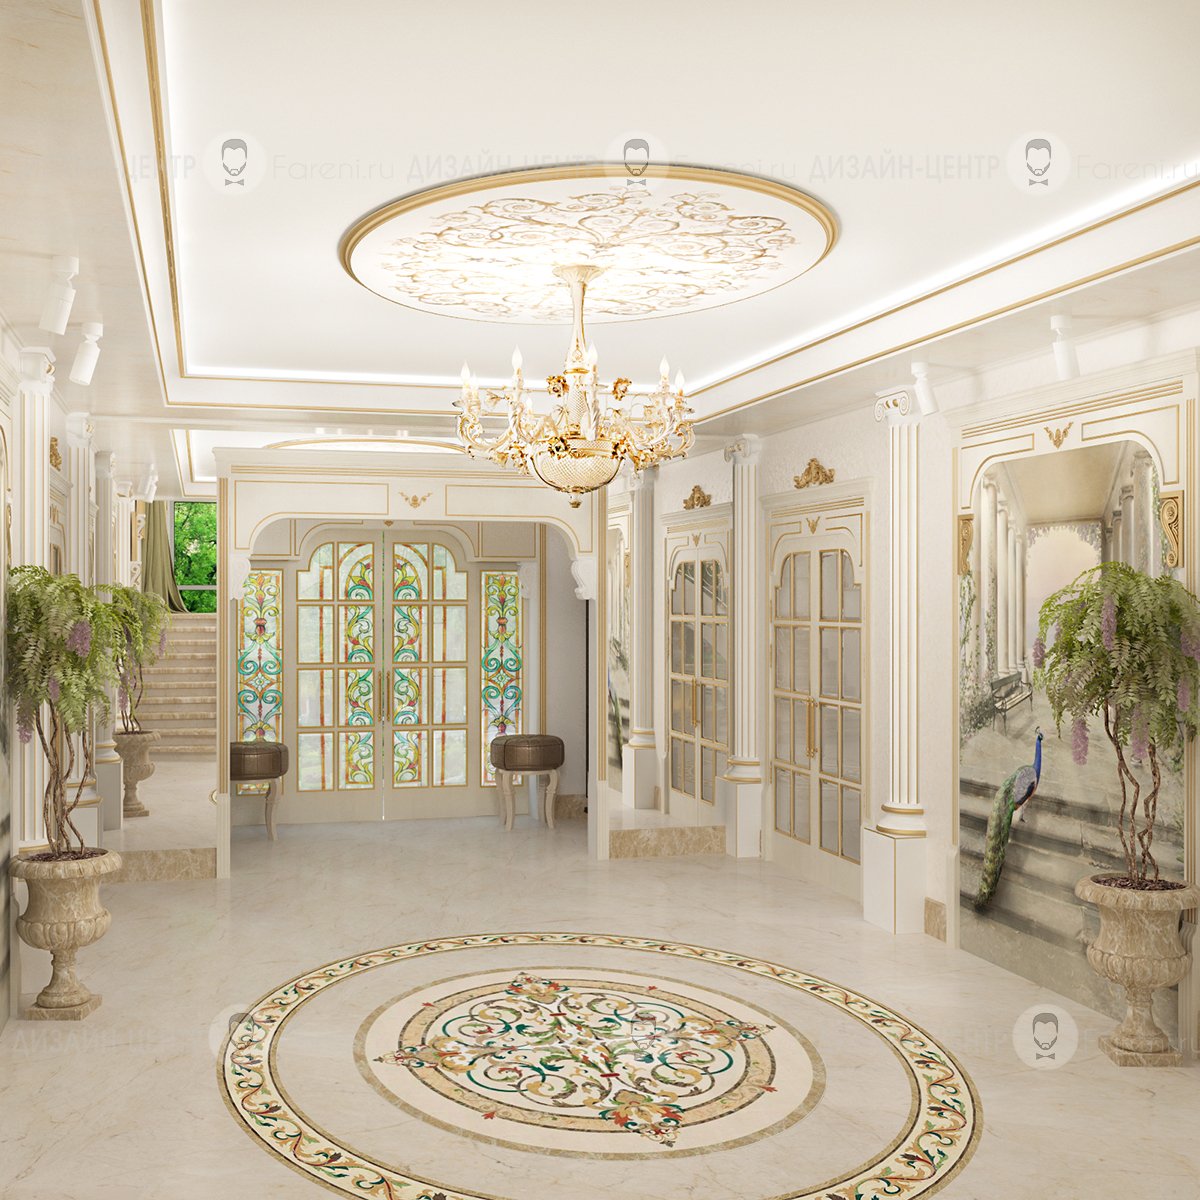 Видео хол. Antonovich Design коридор. Холл в доме. Интерьер холла. Фойе в классическом стиле.